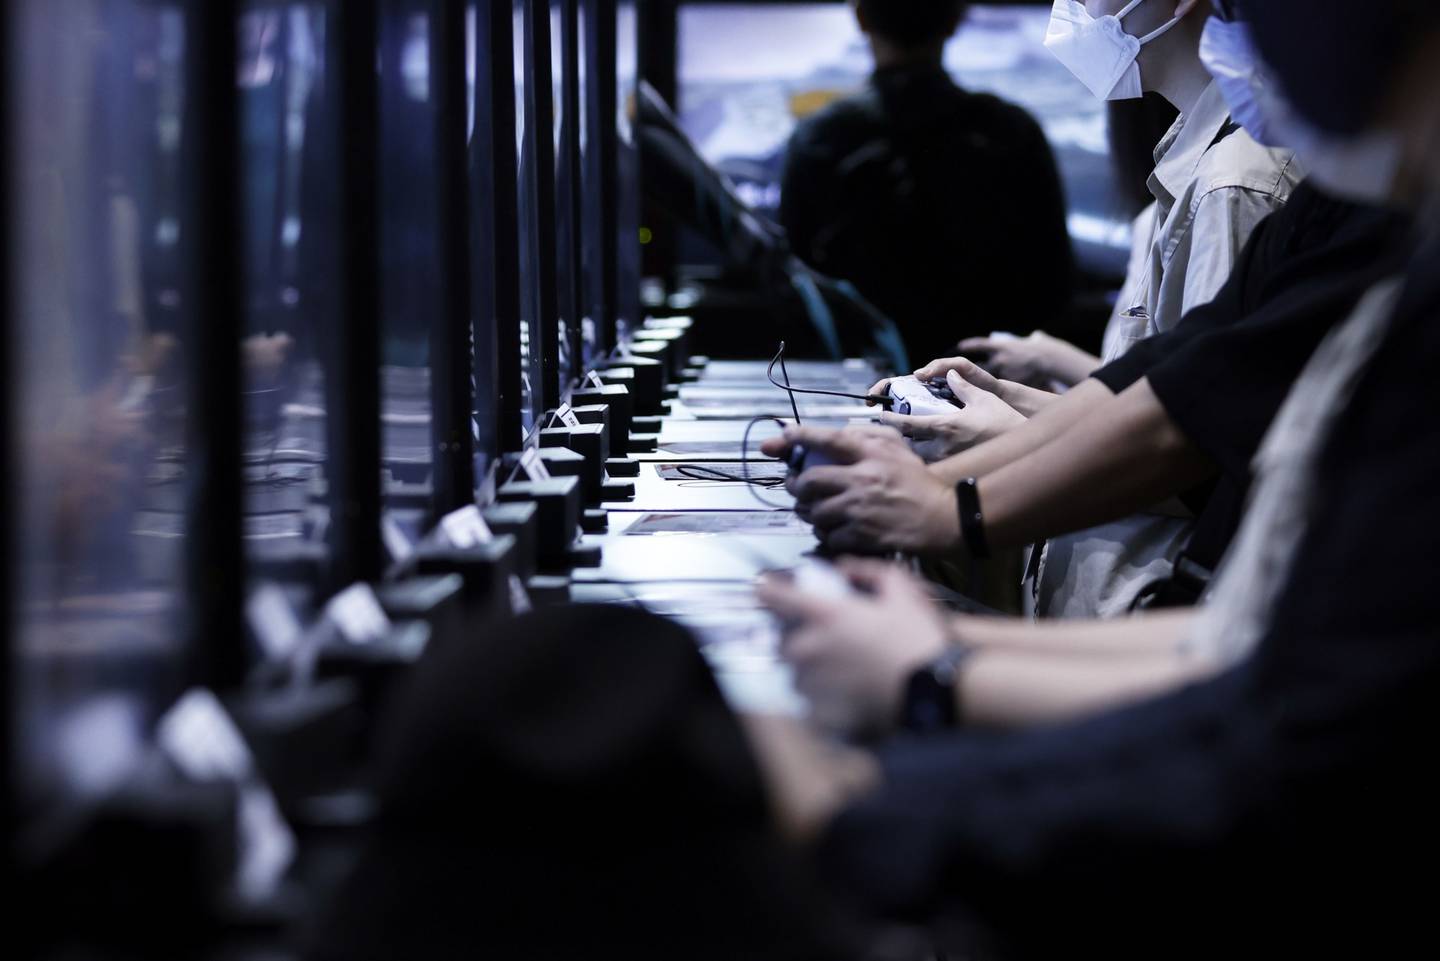 Los asistentes juegan a videojuegos en las consolas de videojuegos Sony Group Corp. PlayStation 5 (PS5) en el Tokyo Game Show 2022 en Chiba, Japón, el jueves 15 de septiembre de 2022. Fotógrafo: Kiyoshi Ota/Bloomberg